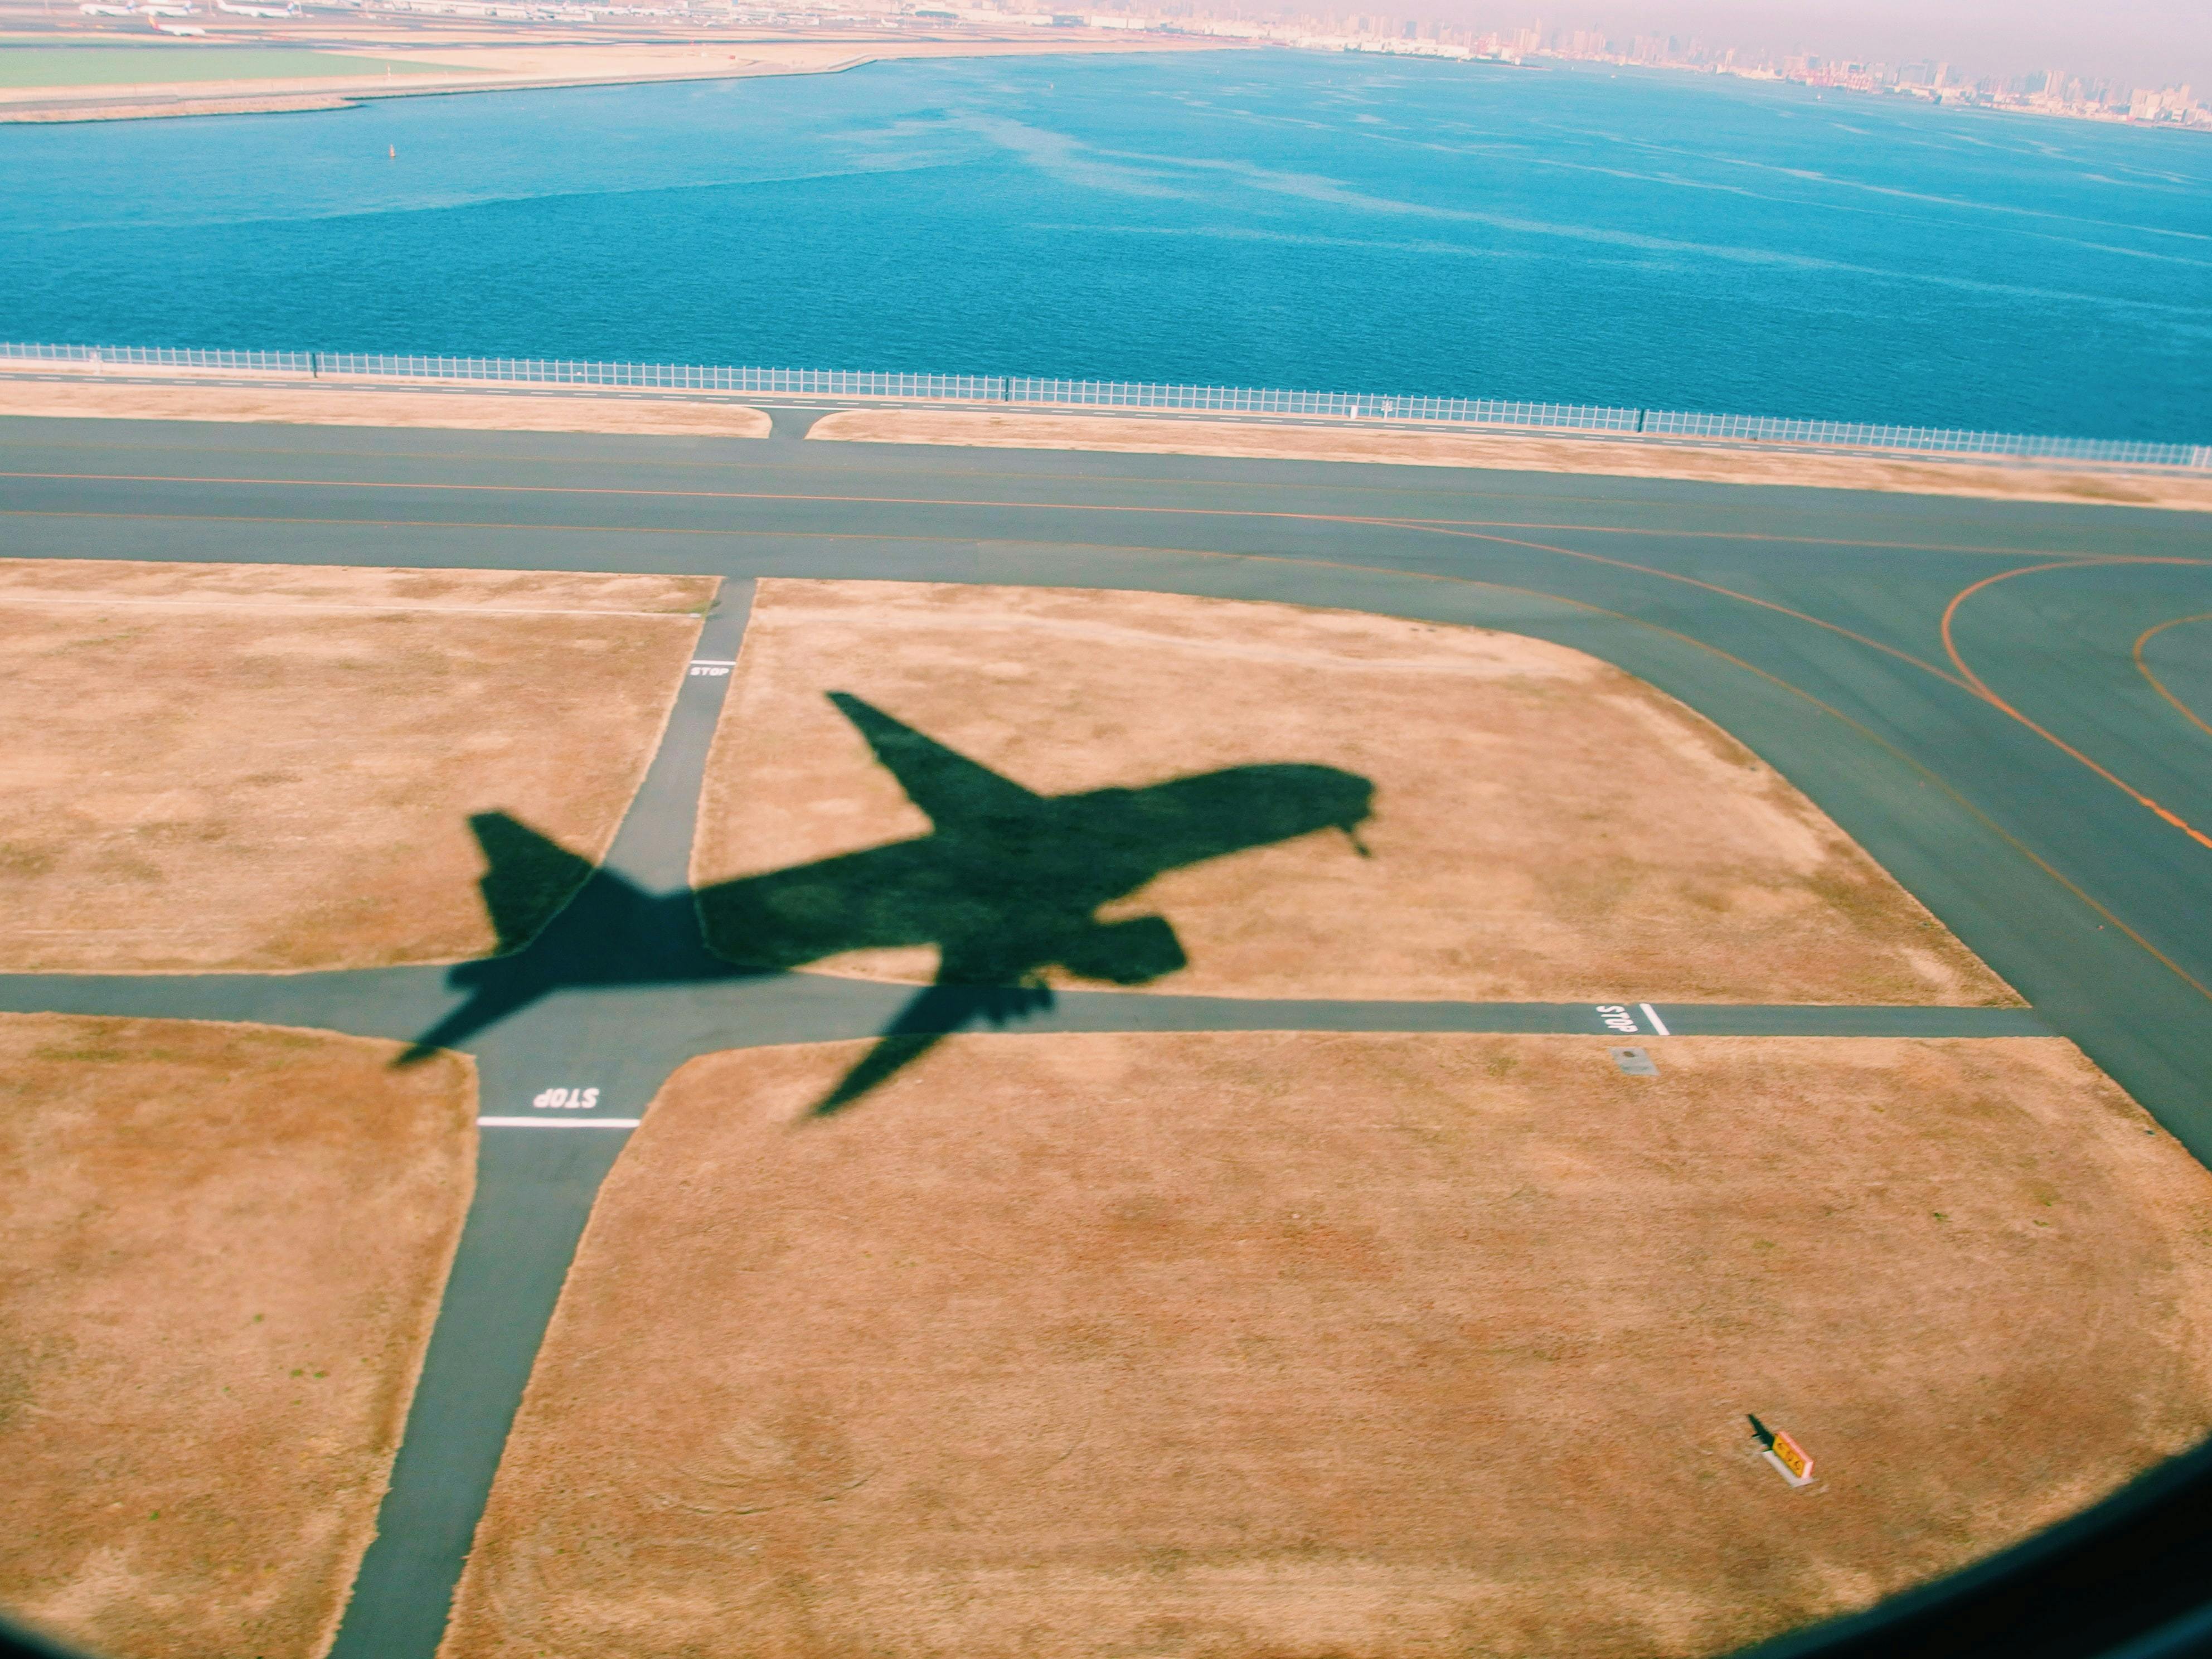 Shadow of plane on runway at Haneda Airport, Japan